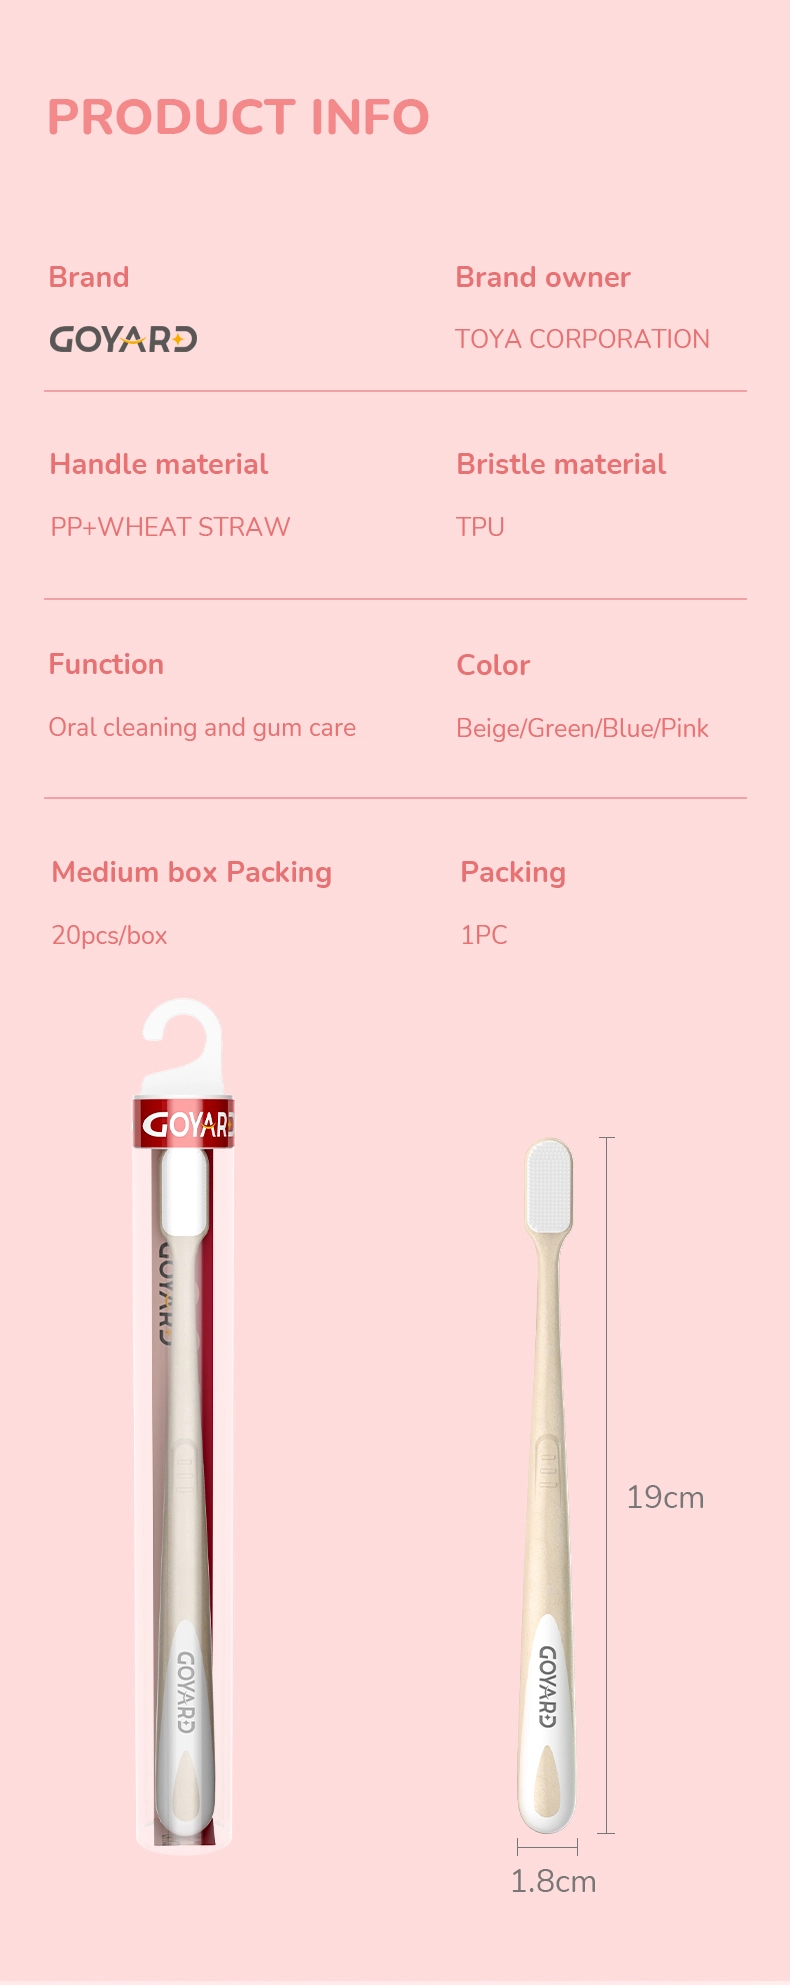 nano toothbrush